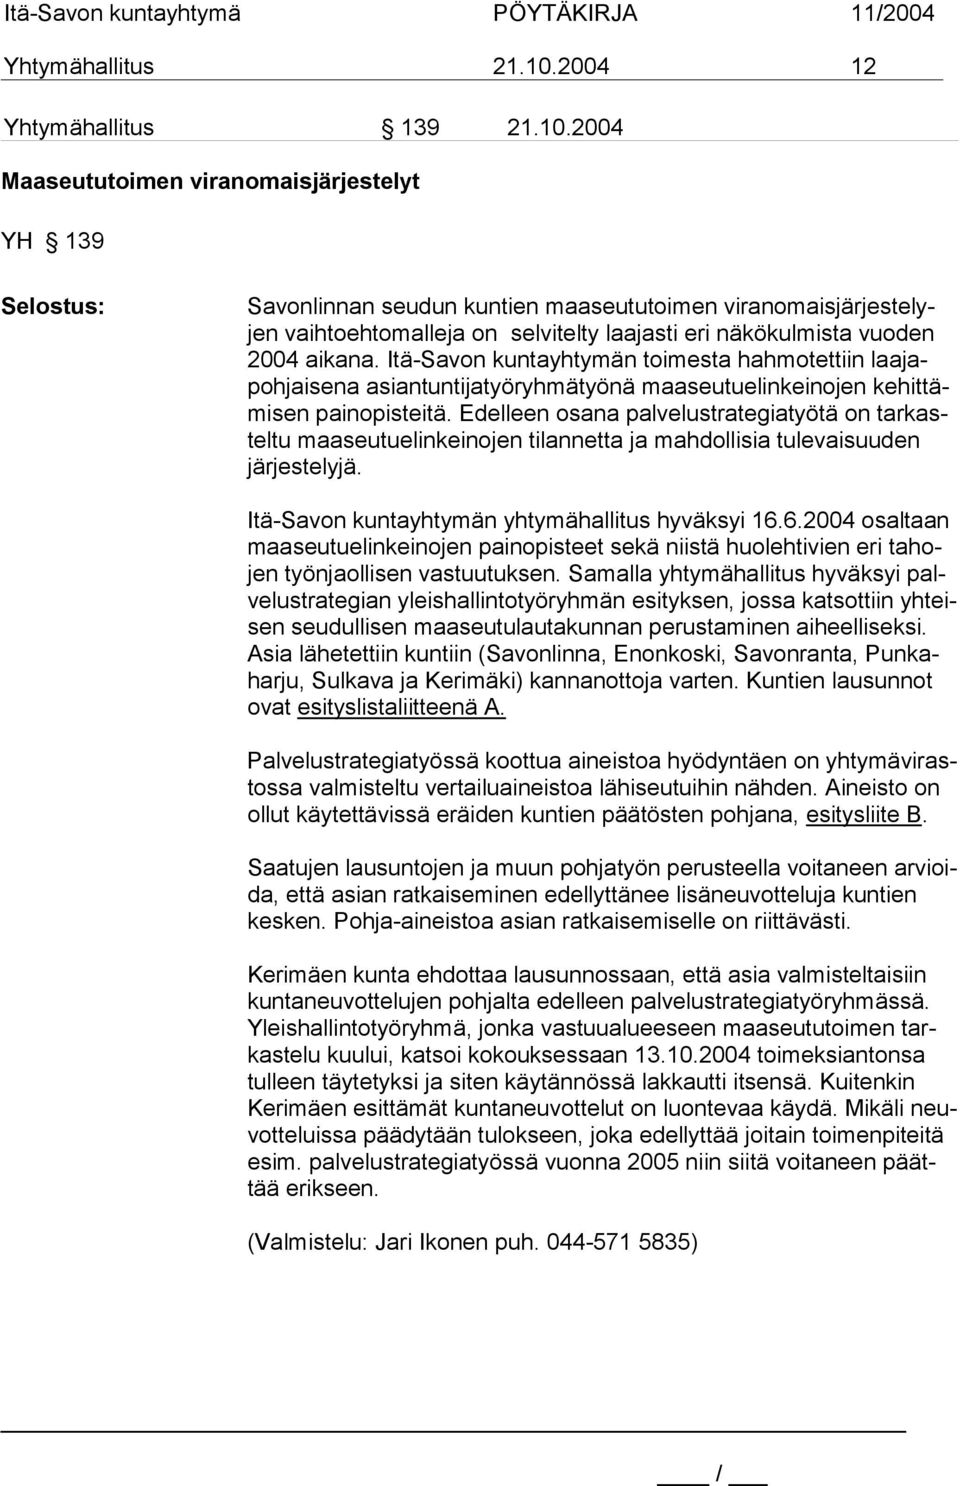 2004 Maaseututoimen viranomaisjärjestelyt YH 139 Selostus: Savonlinnan seudun kuntien maaseututoimen viranomaisjärjestelyjen vaihtoehtomalleja on selvitelty laajasti eri näkökulmista vuoden 2004